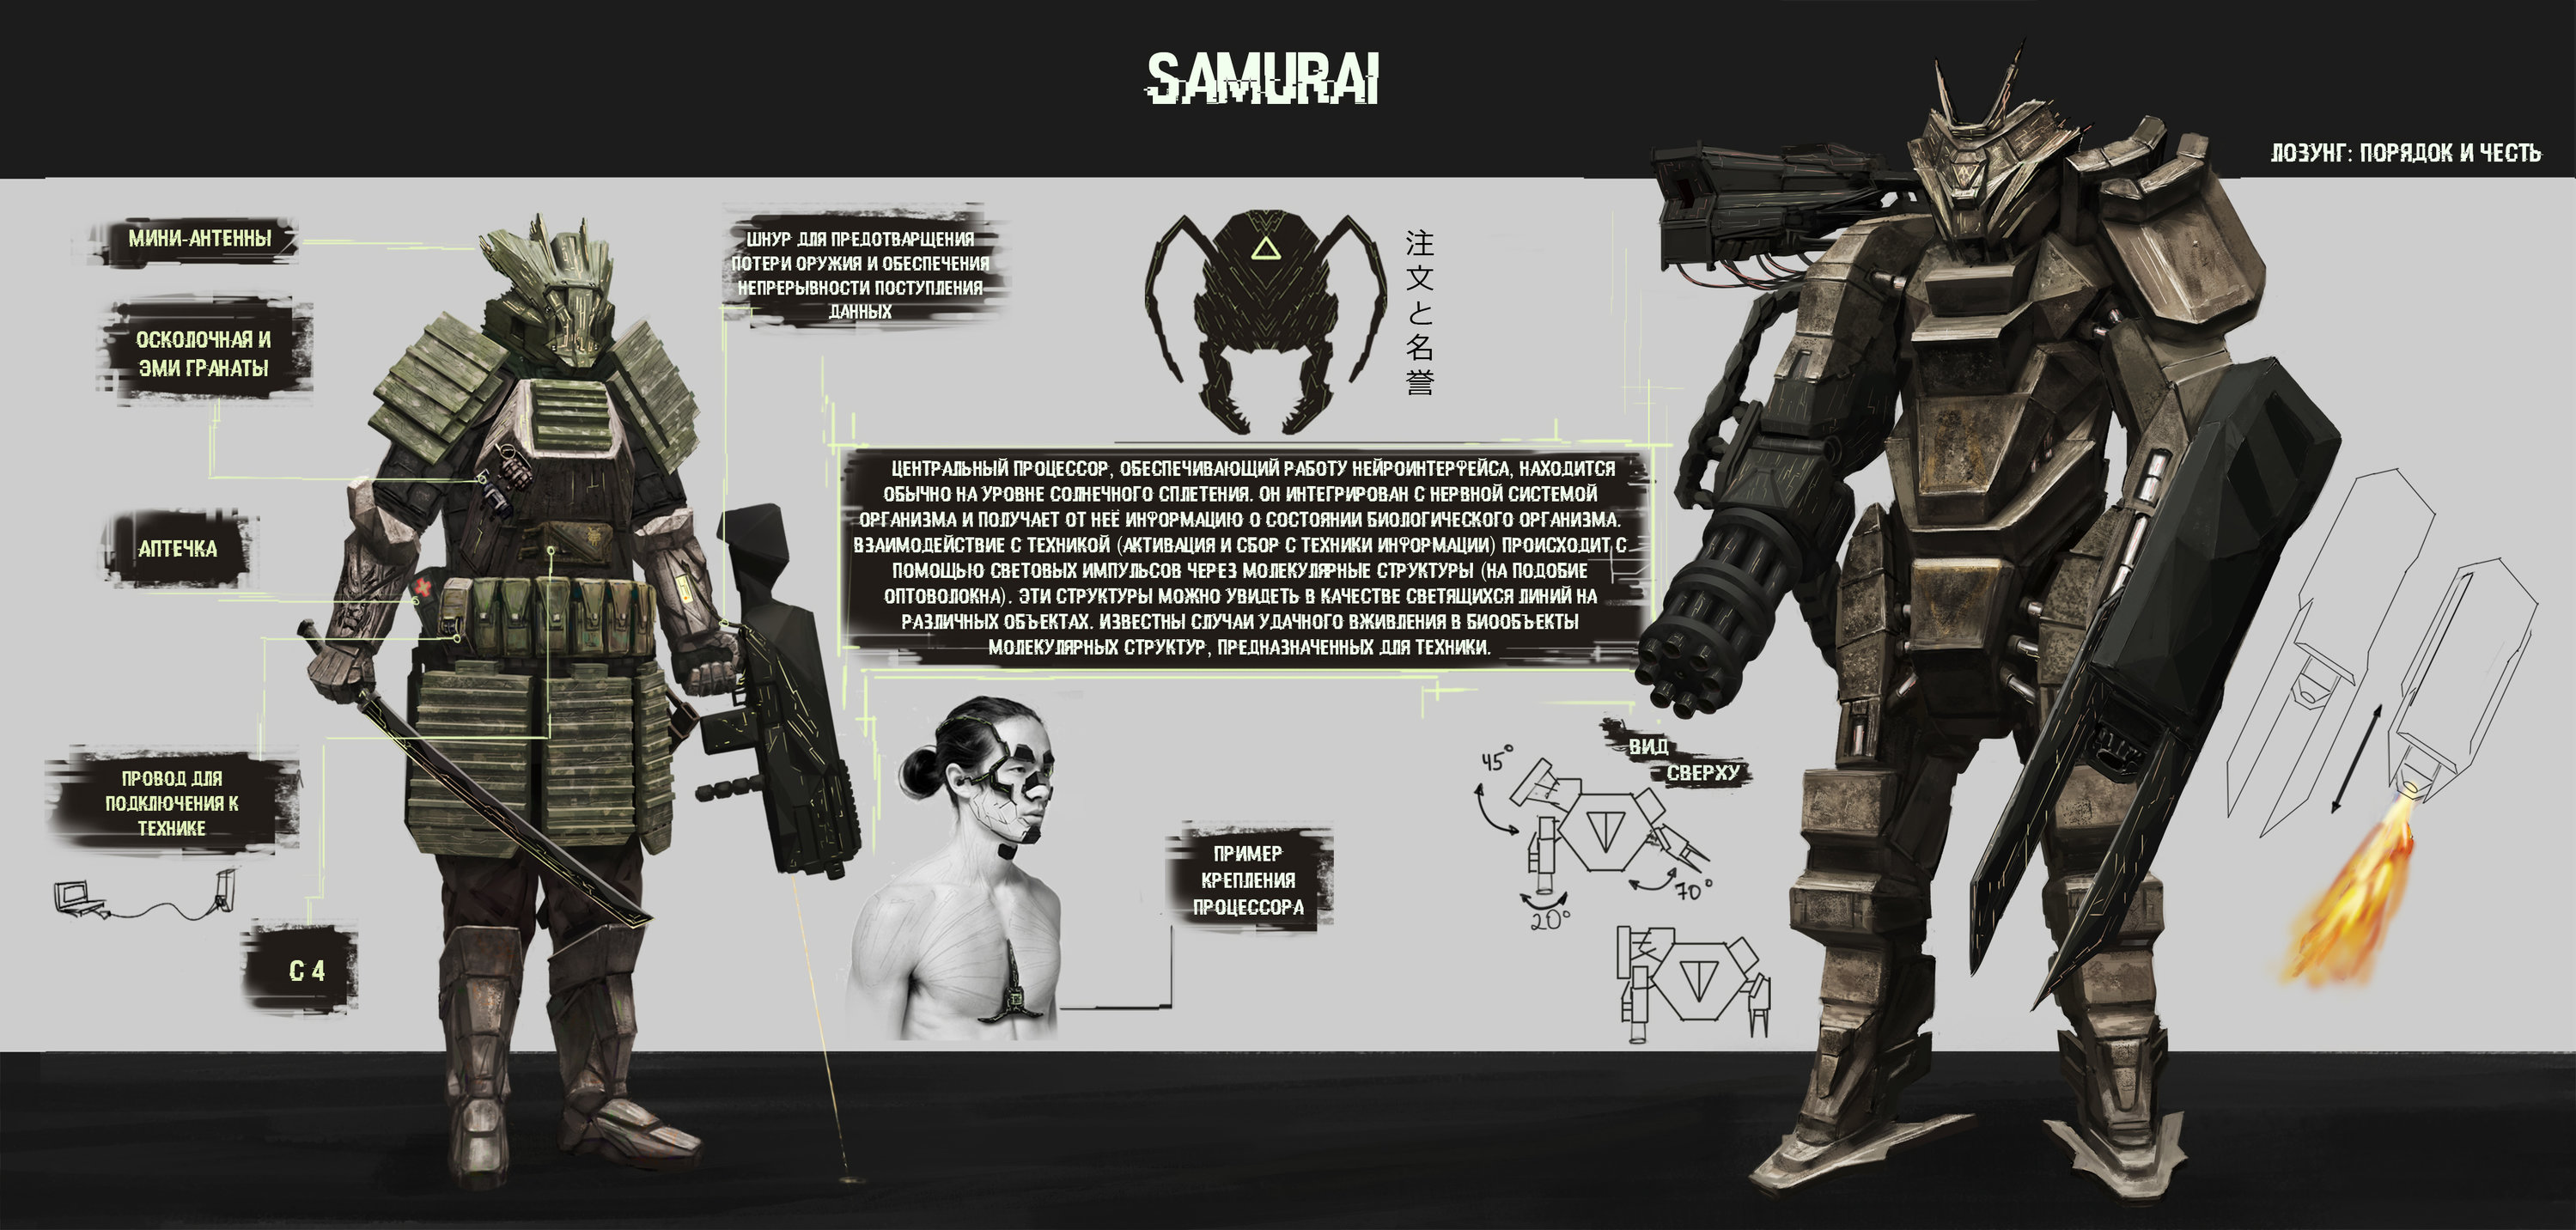 samuraes 3.jpg